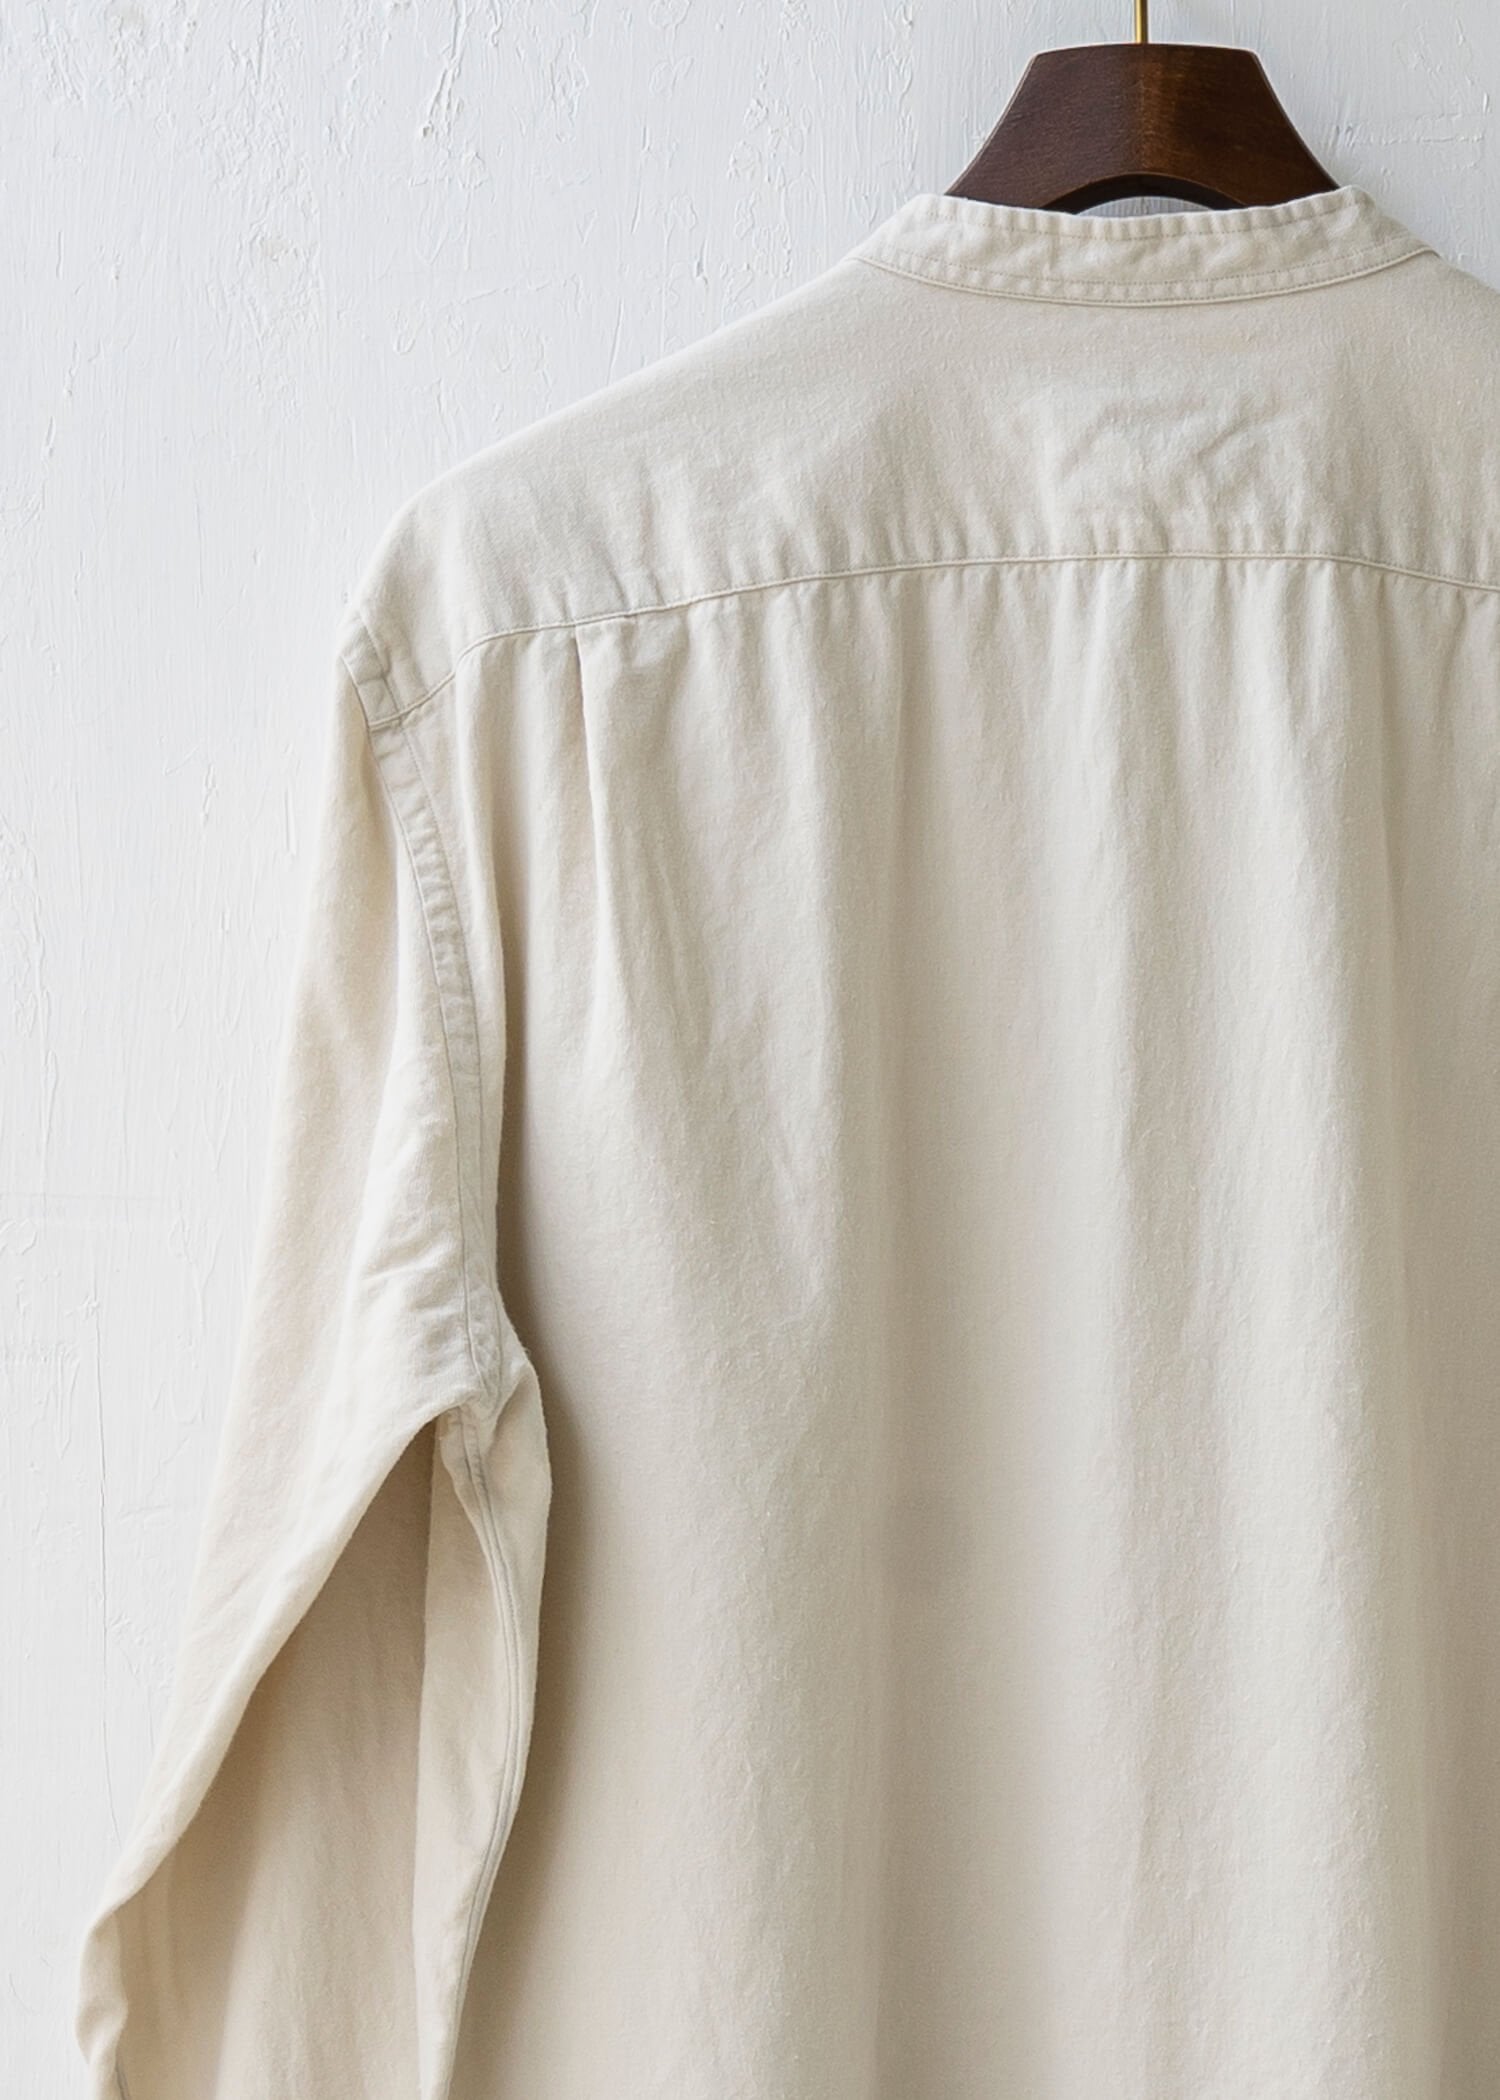 ZIIIN / "KOHBOU" Sulfide dye Brushed cotton Henry neck shirt / KINARI